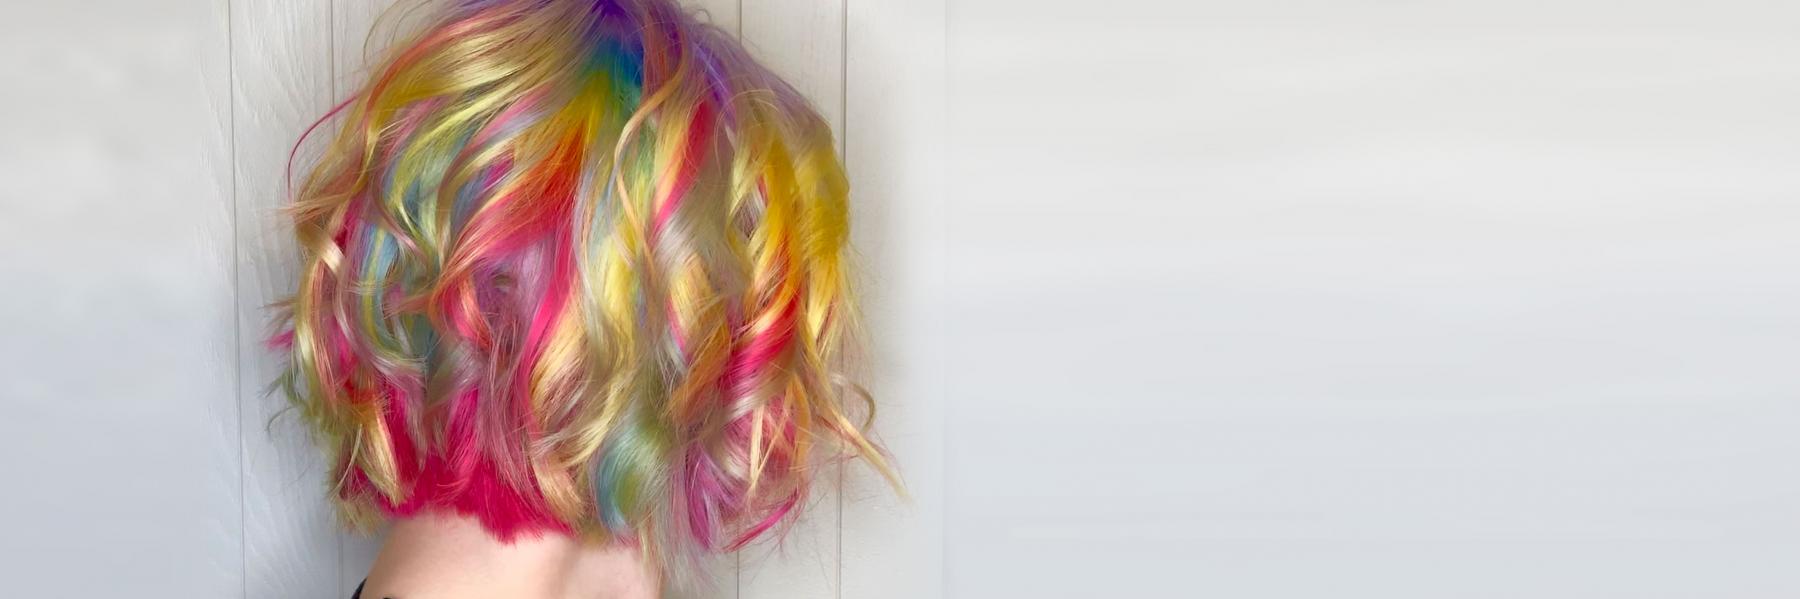 fruit-loop-hair-color